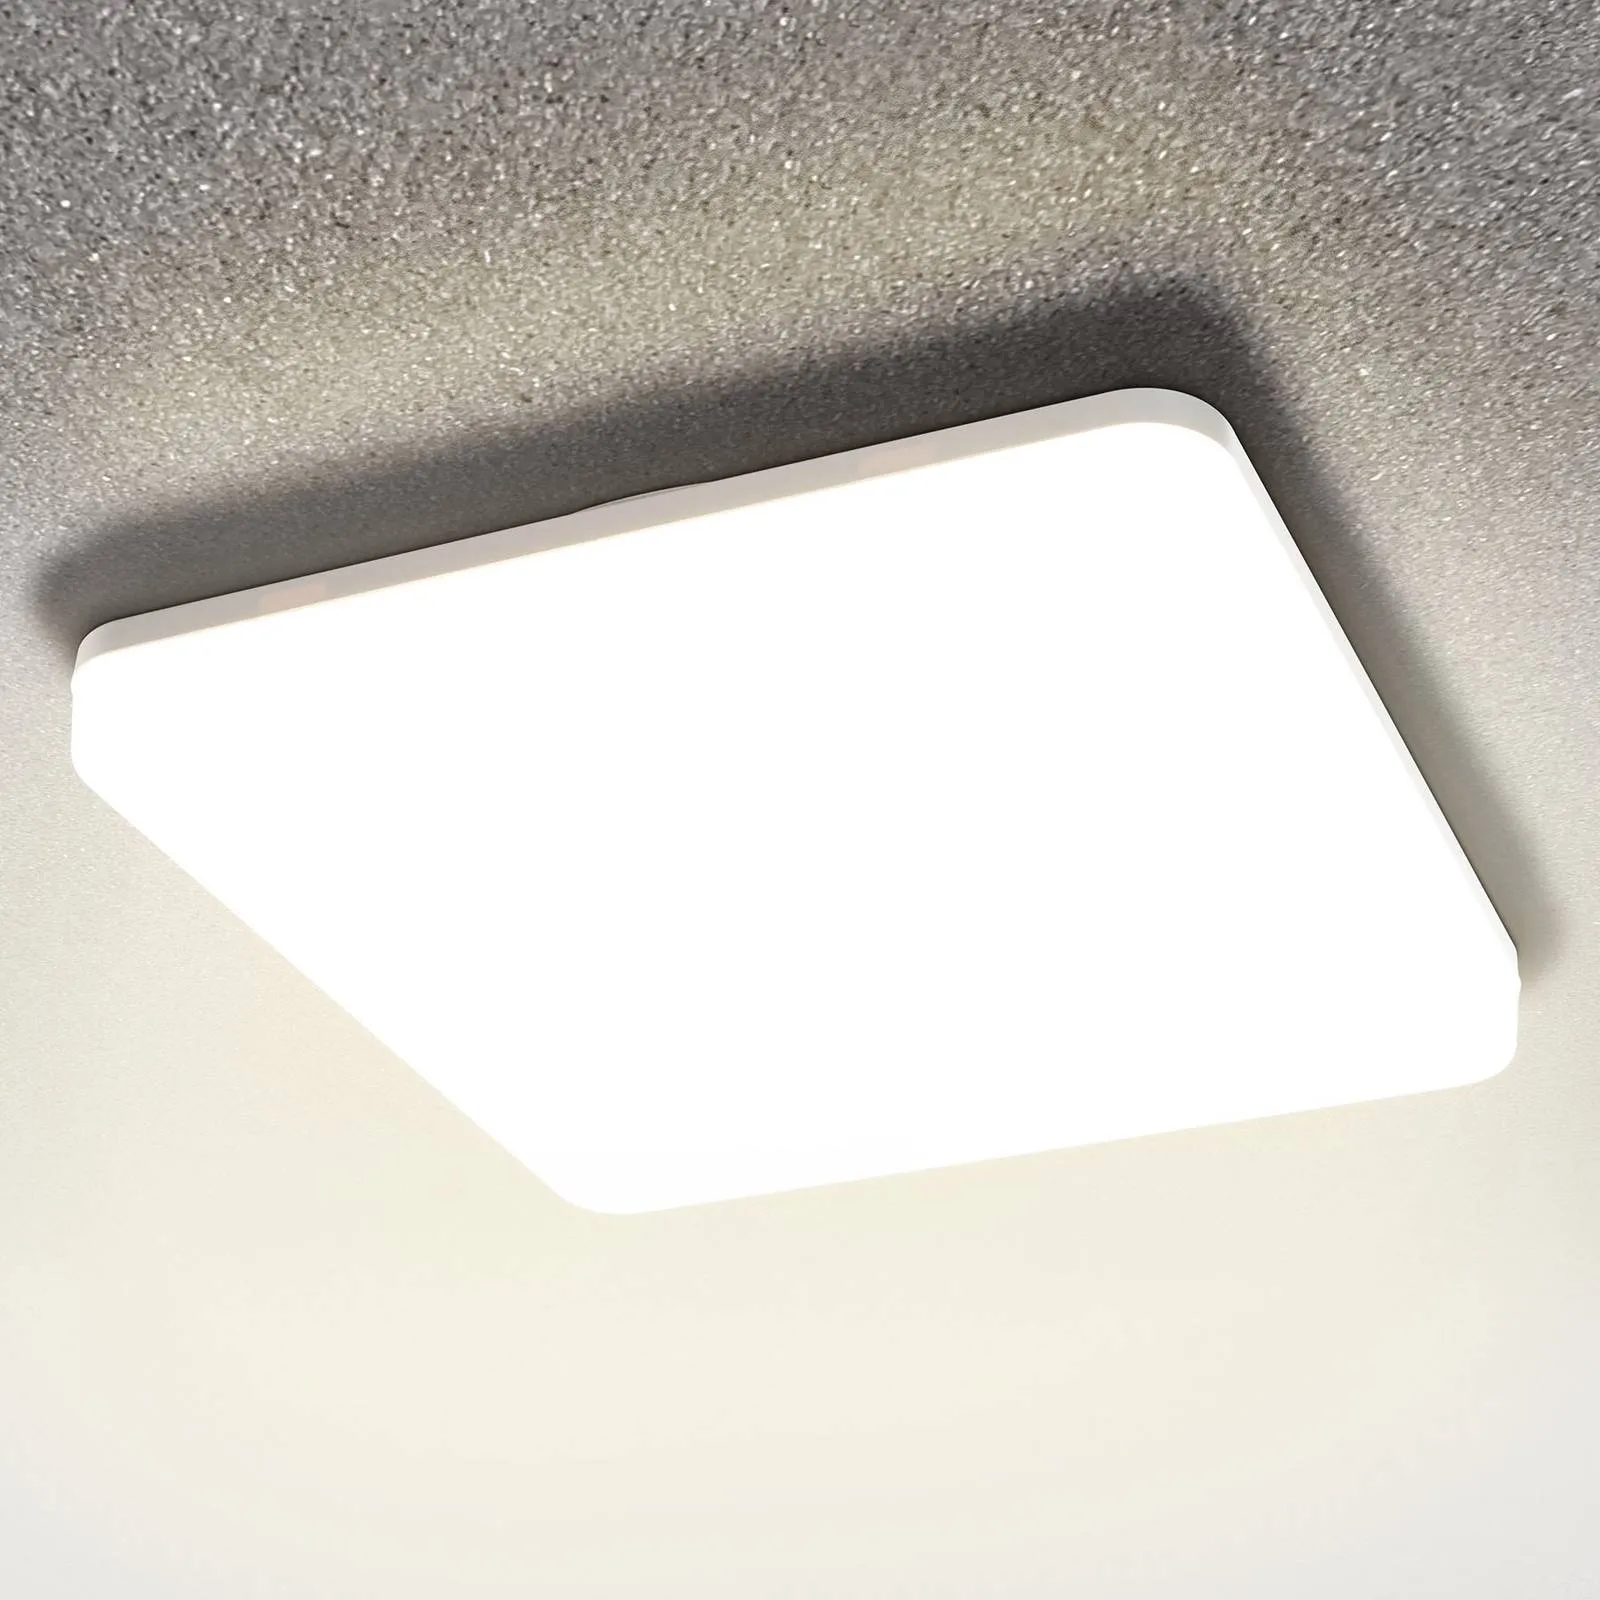 Pronto LED sensor ceiling light, 33 x 33 cm